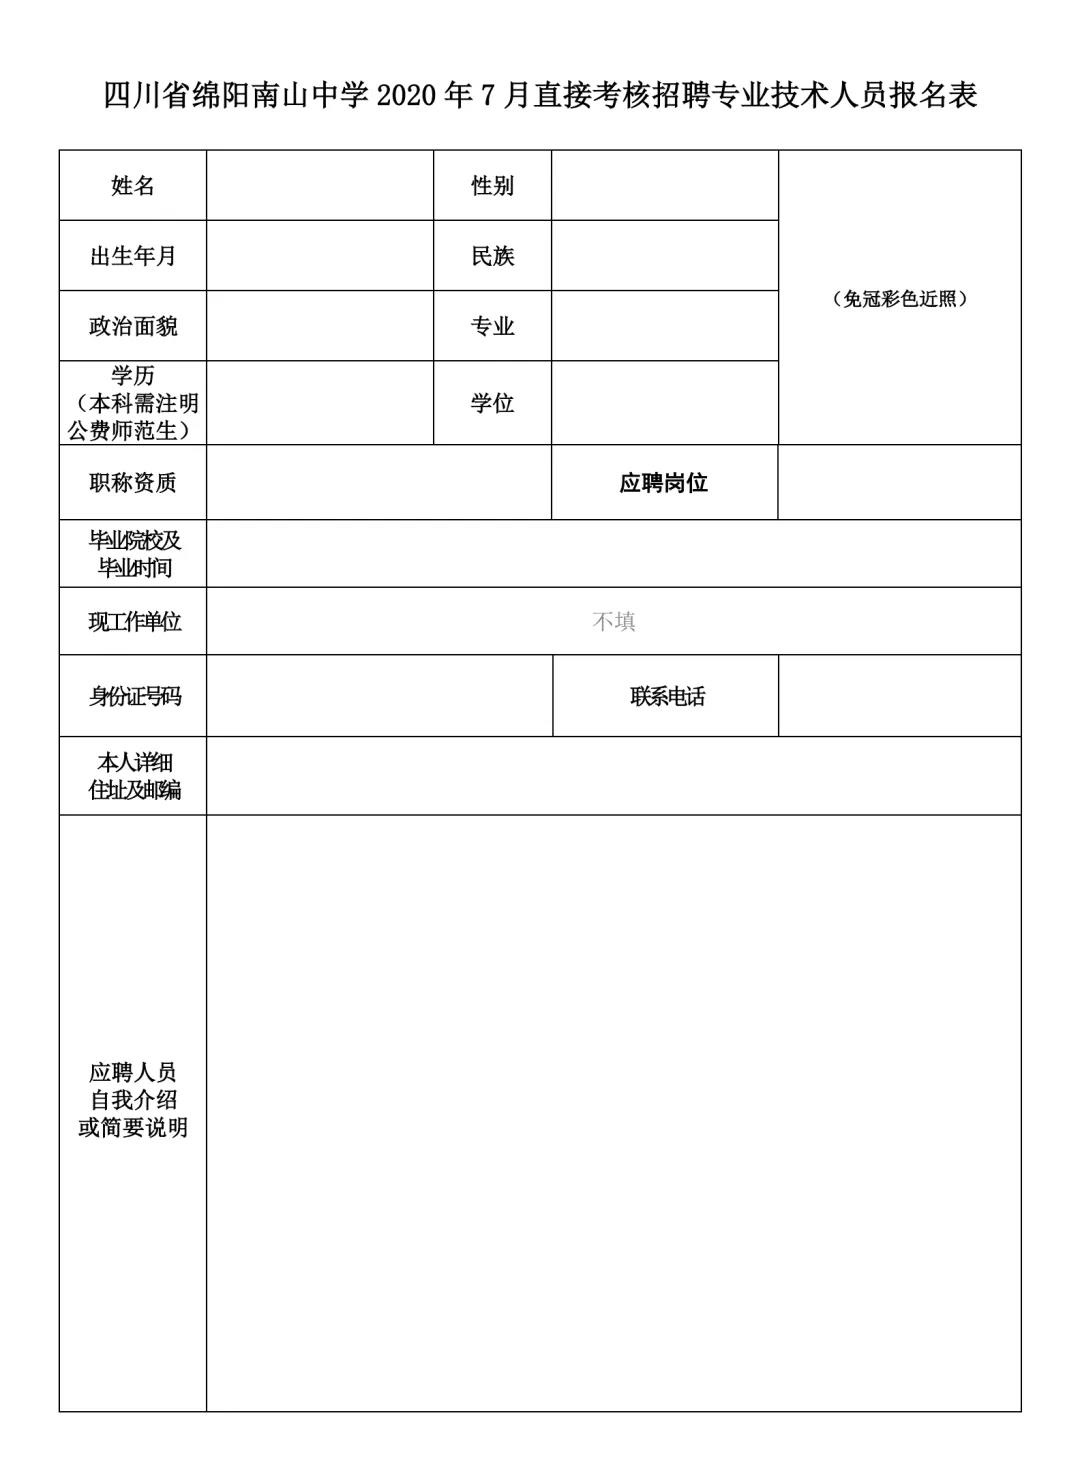 四川省绵阳南山中学关于2020年7月直接考核招聘教师公告